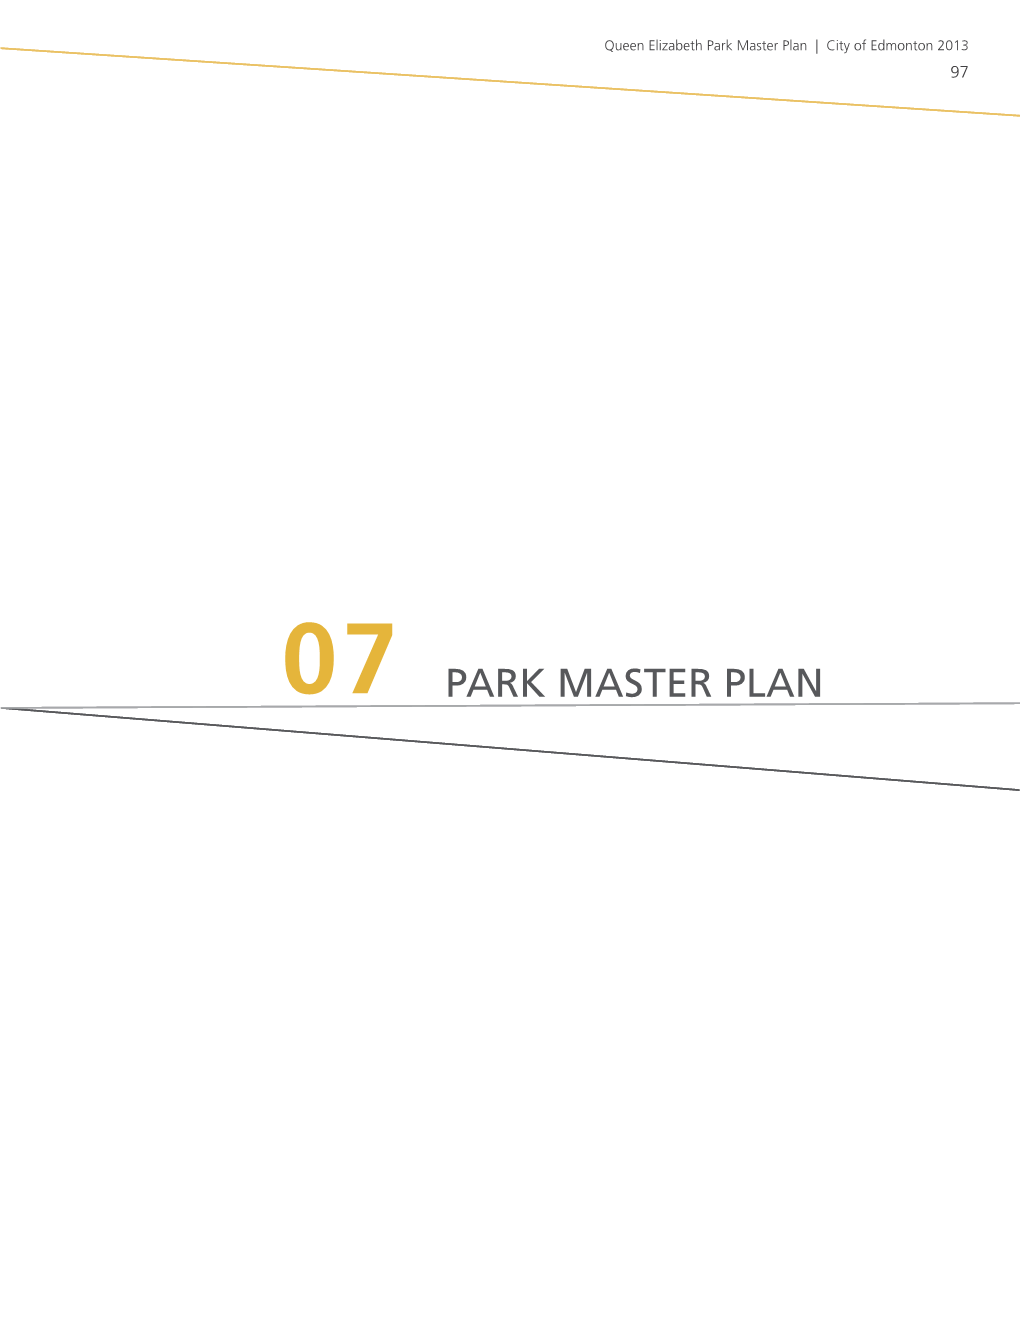 Part 1. Sec 7: Park Master Plan